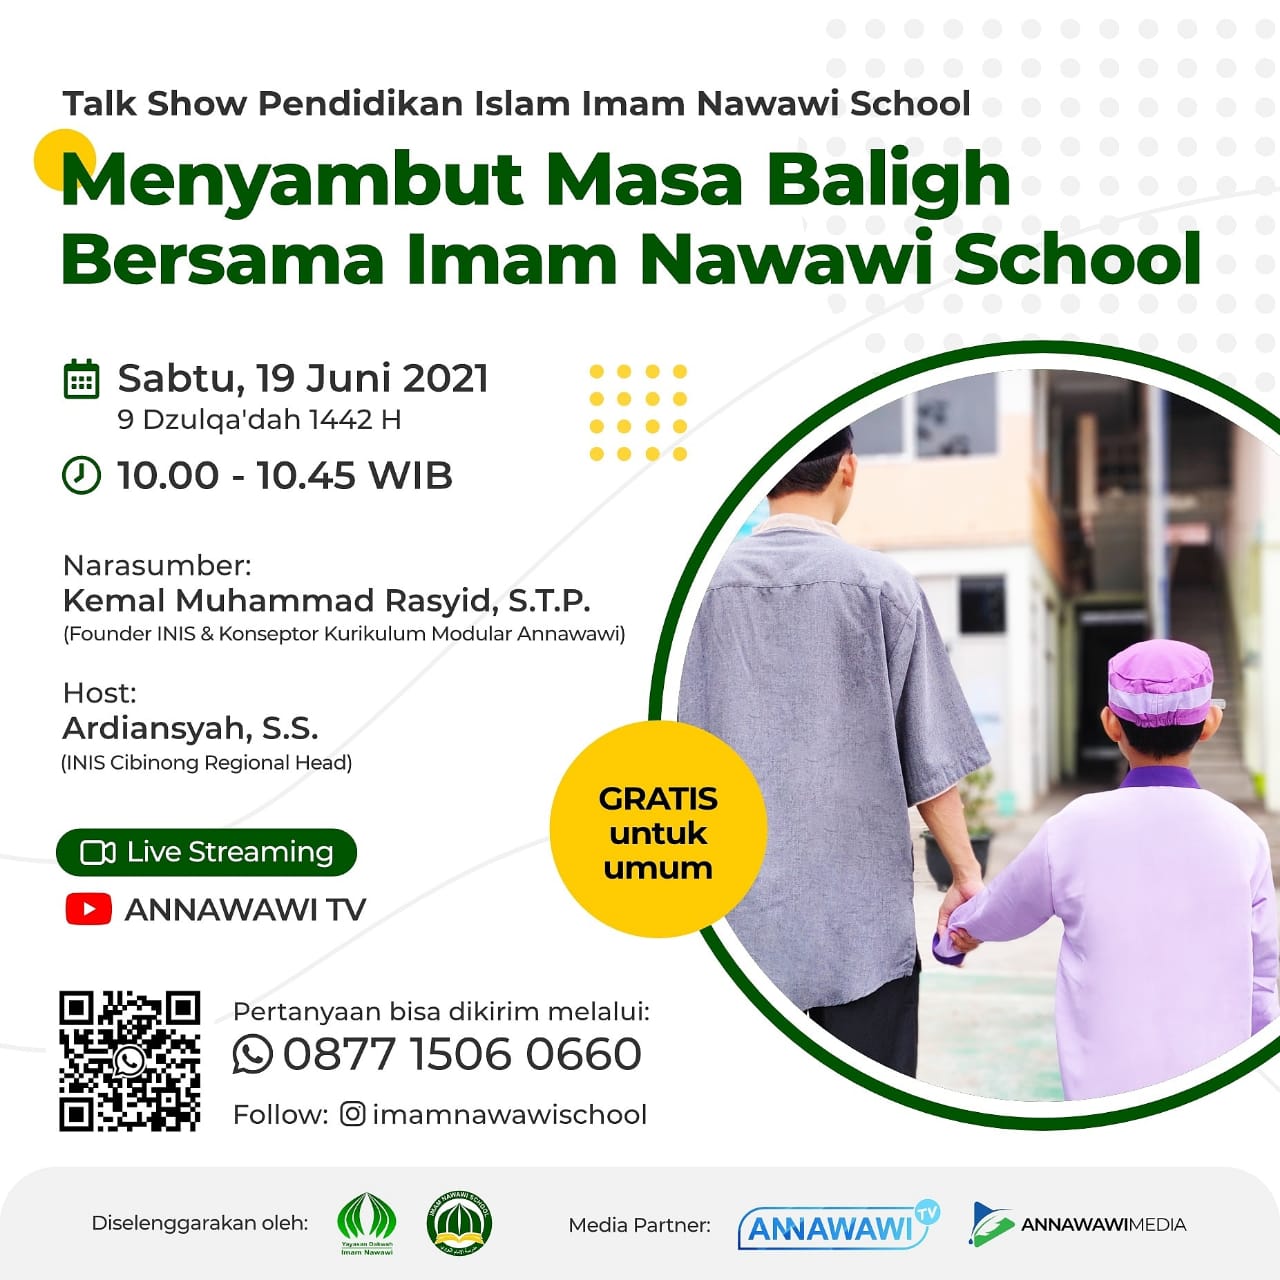 Talk Show Pendidikan Islam: “Menyambut Masa Baligh Bersama Imam Nawawi School”